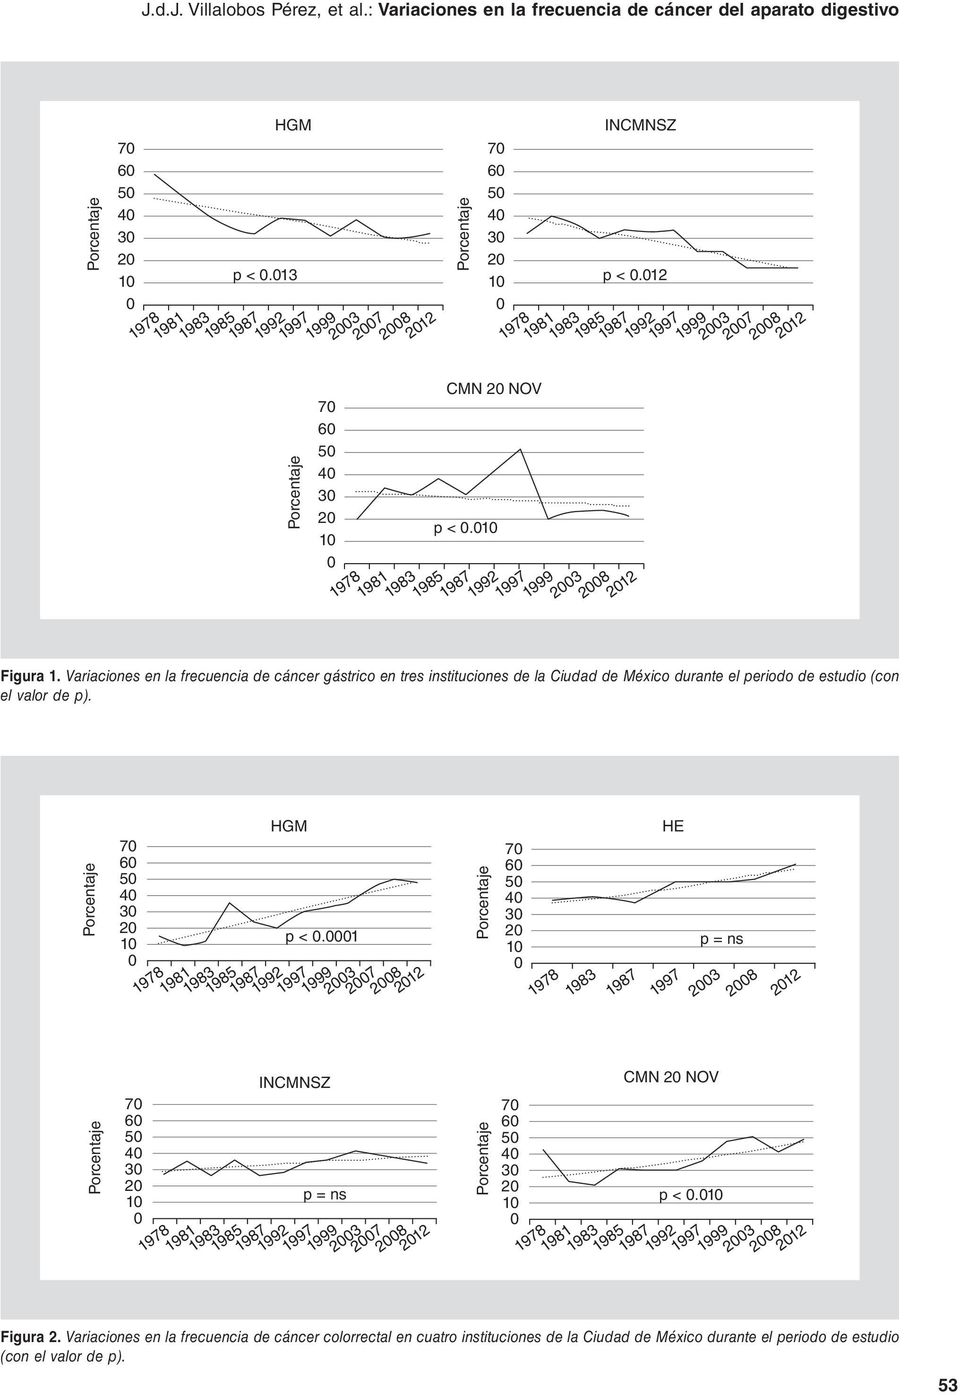 Variaciones en la frecuencia de cáncer gástrico en tres instituciones de la Ciudad de México durante el periodo de estudio (con el valor de p).